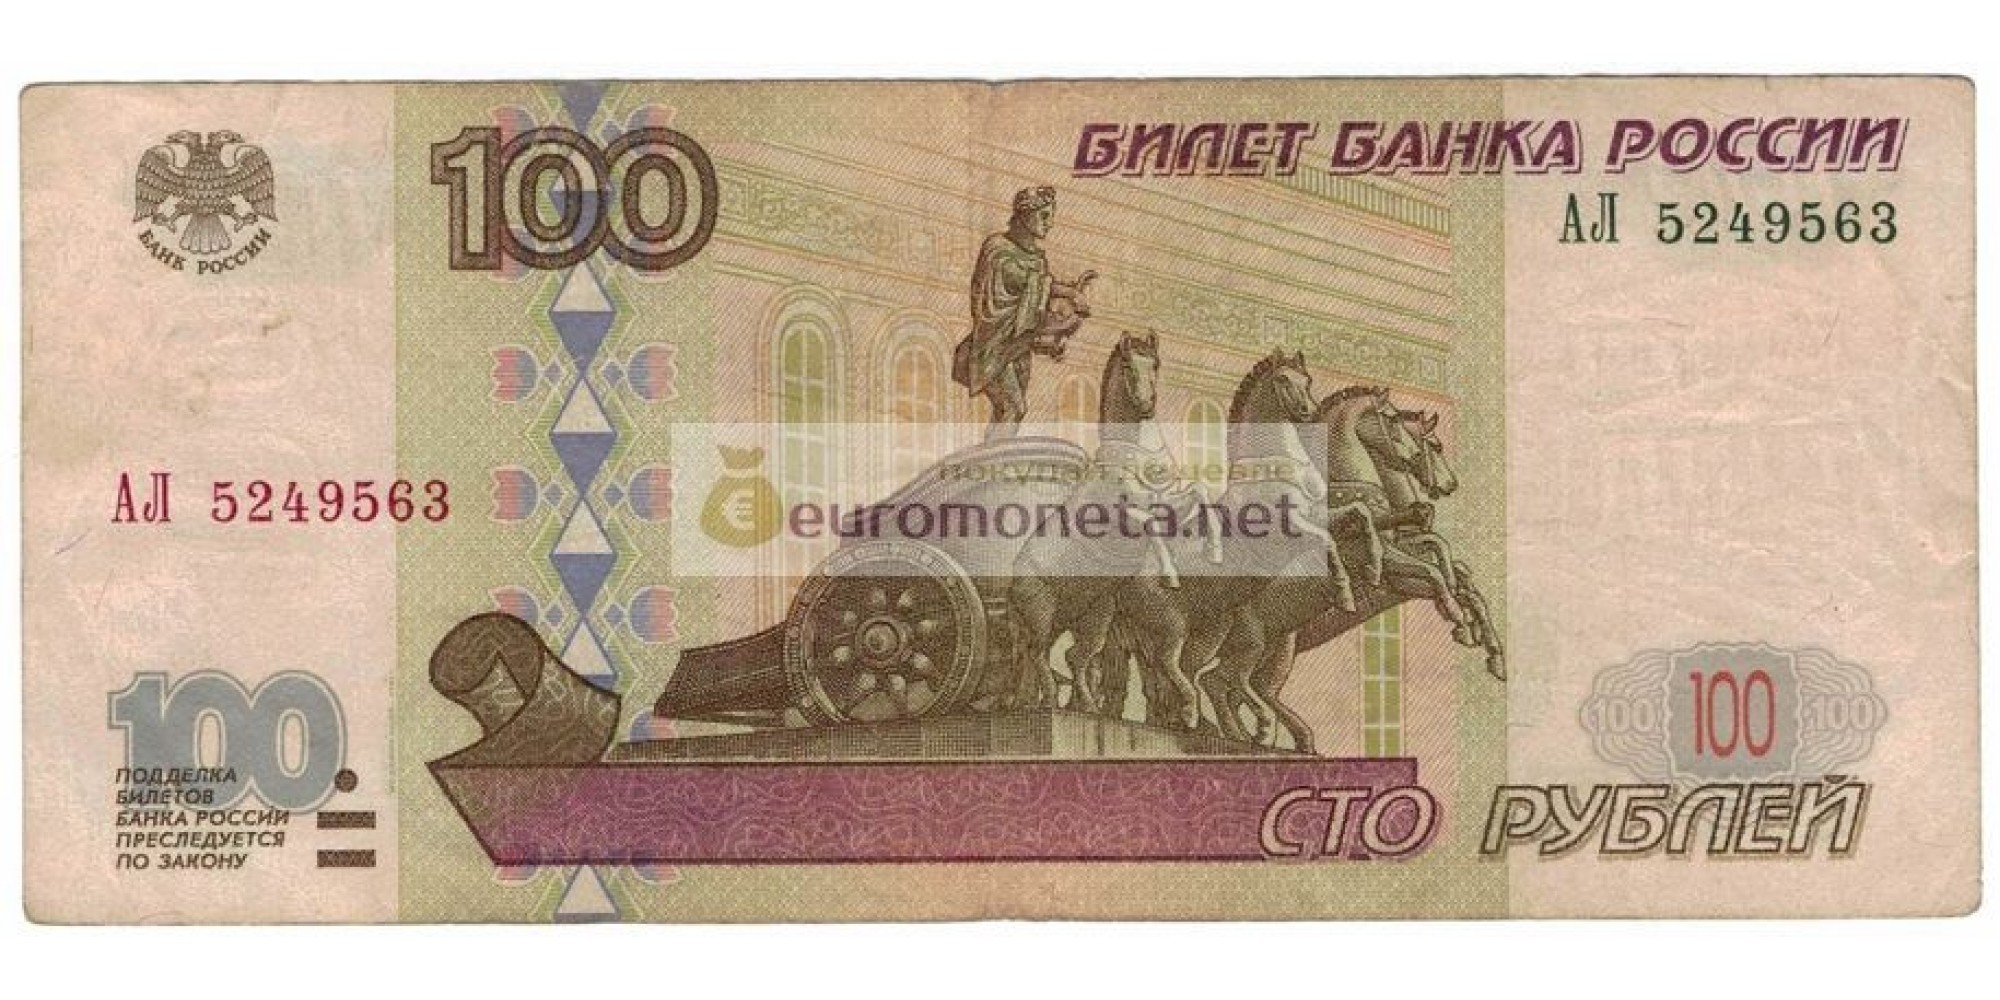 Россия 100 рублей 1997 год модификация 2001 год редкая серия АЛ 5249563